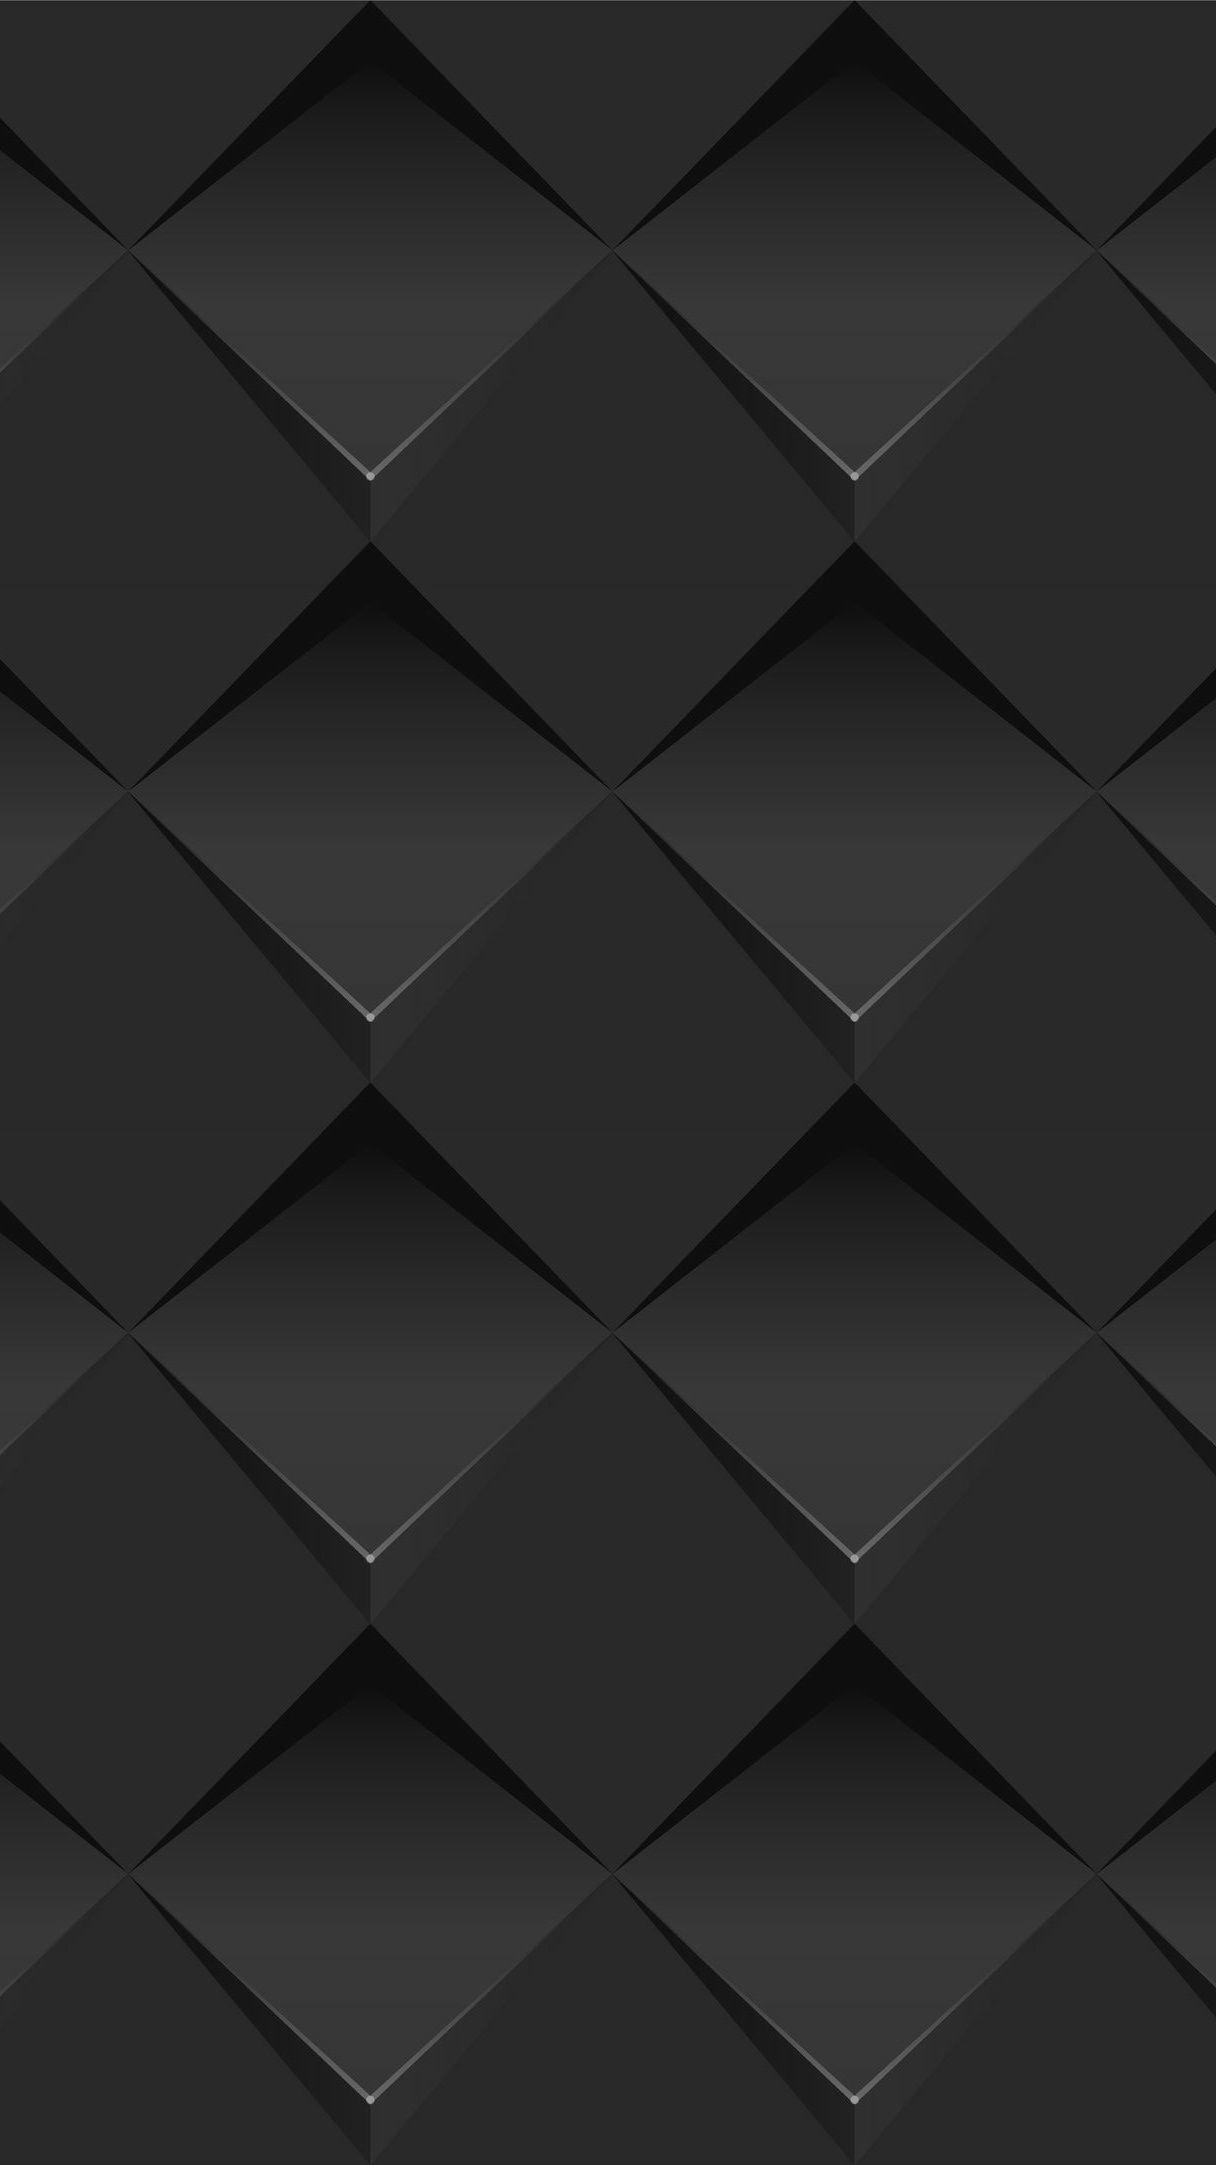 Dark Phone Geometric Wallpapers - Wallpaper Cave